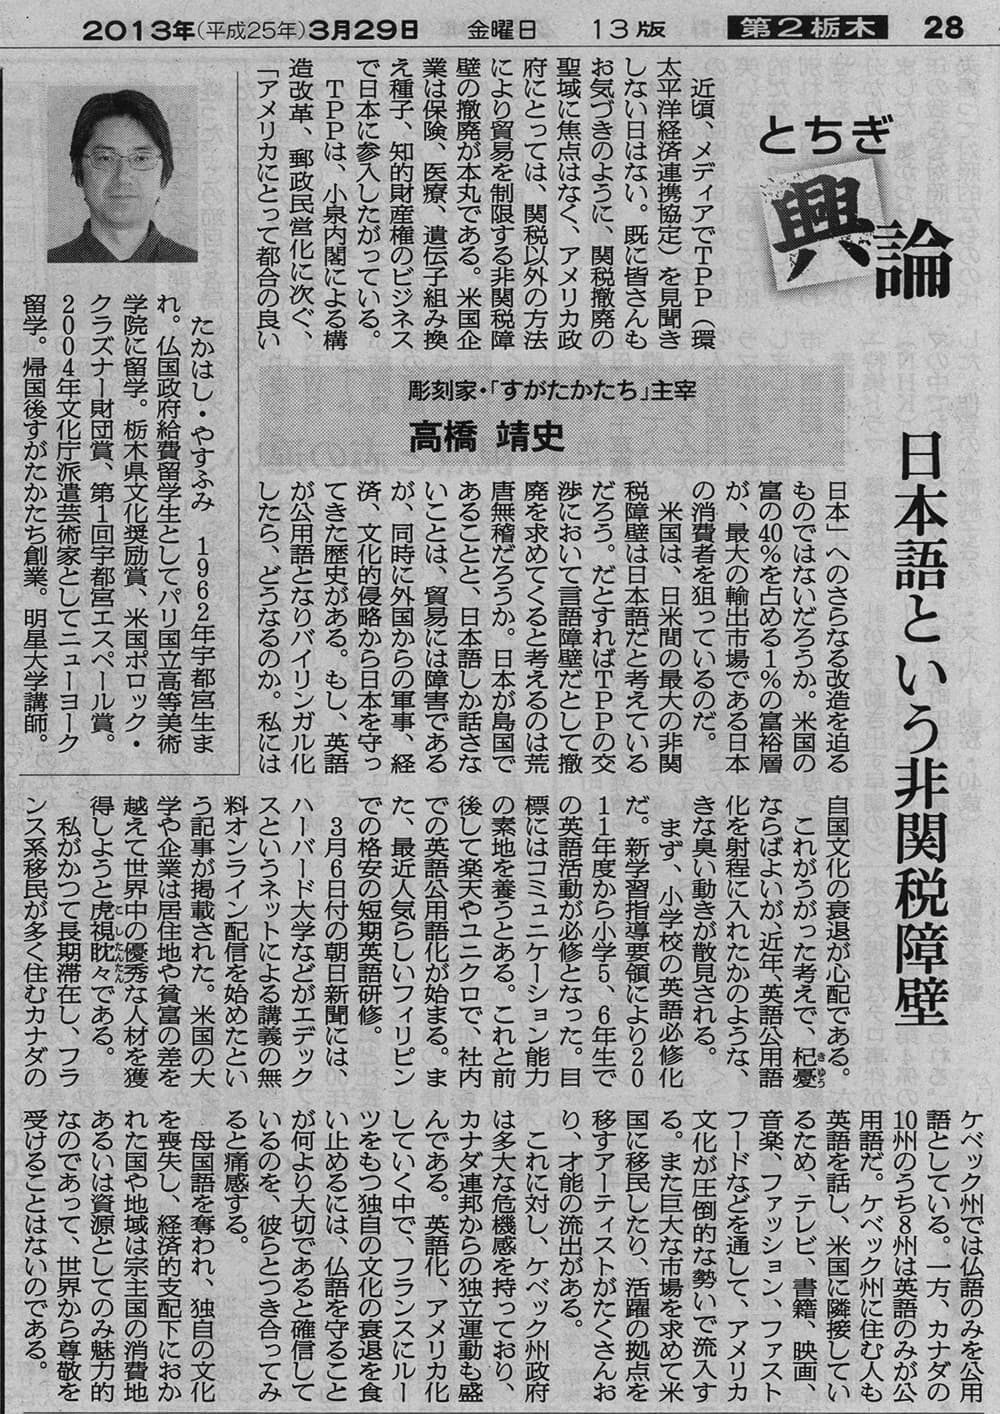 高橋靖史とちぎ興論-日本語という非関税障壁